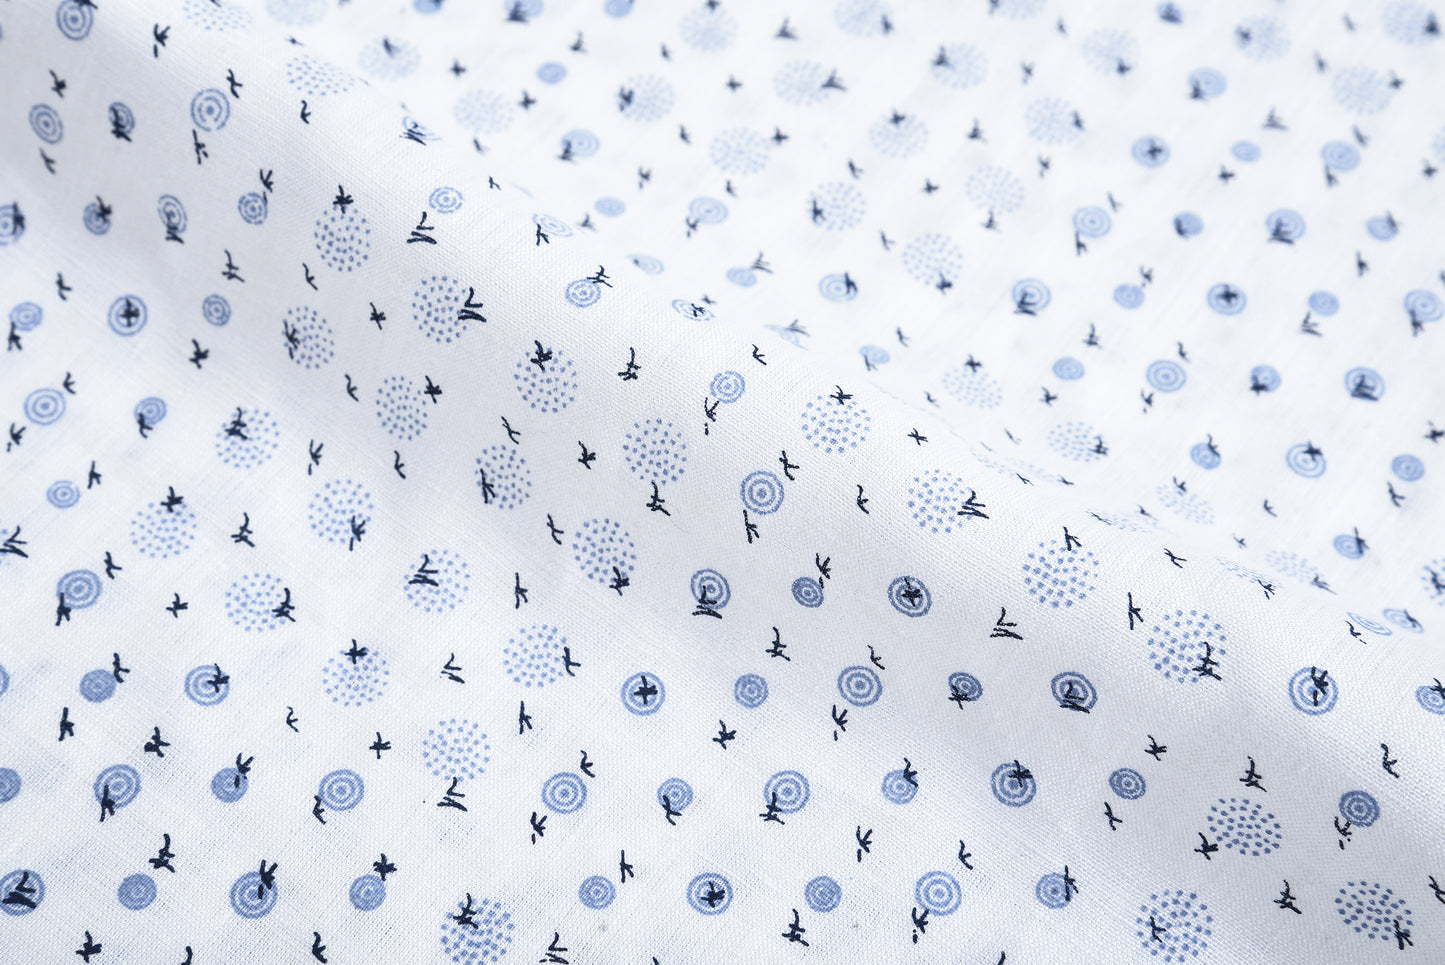 Linen: Blue Printed Birds On White